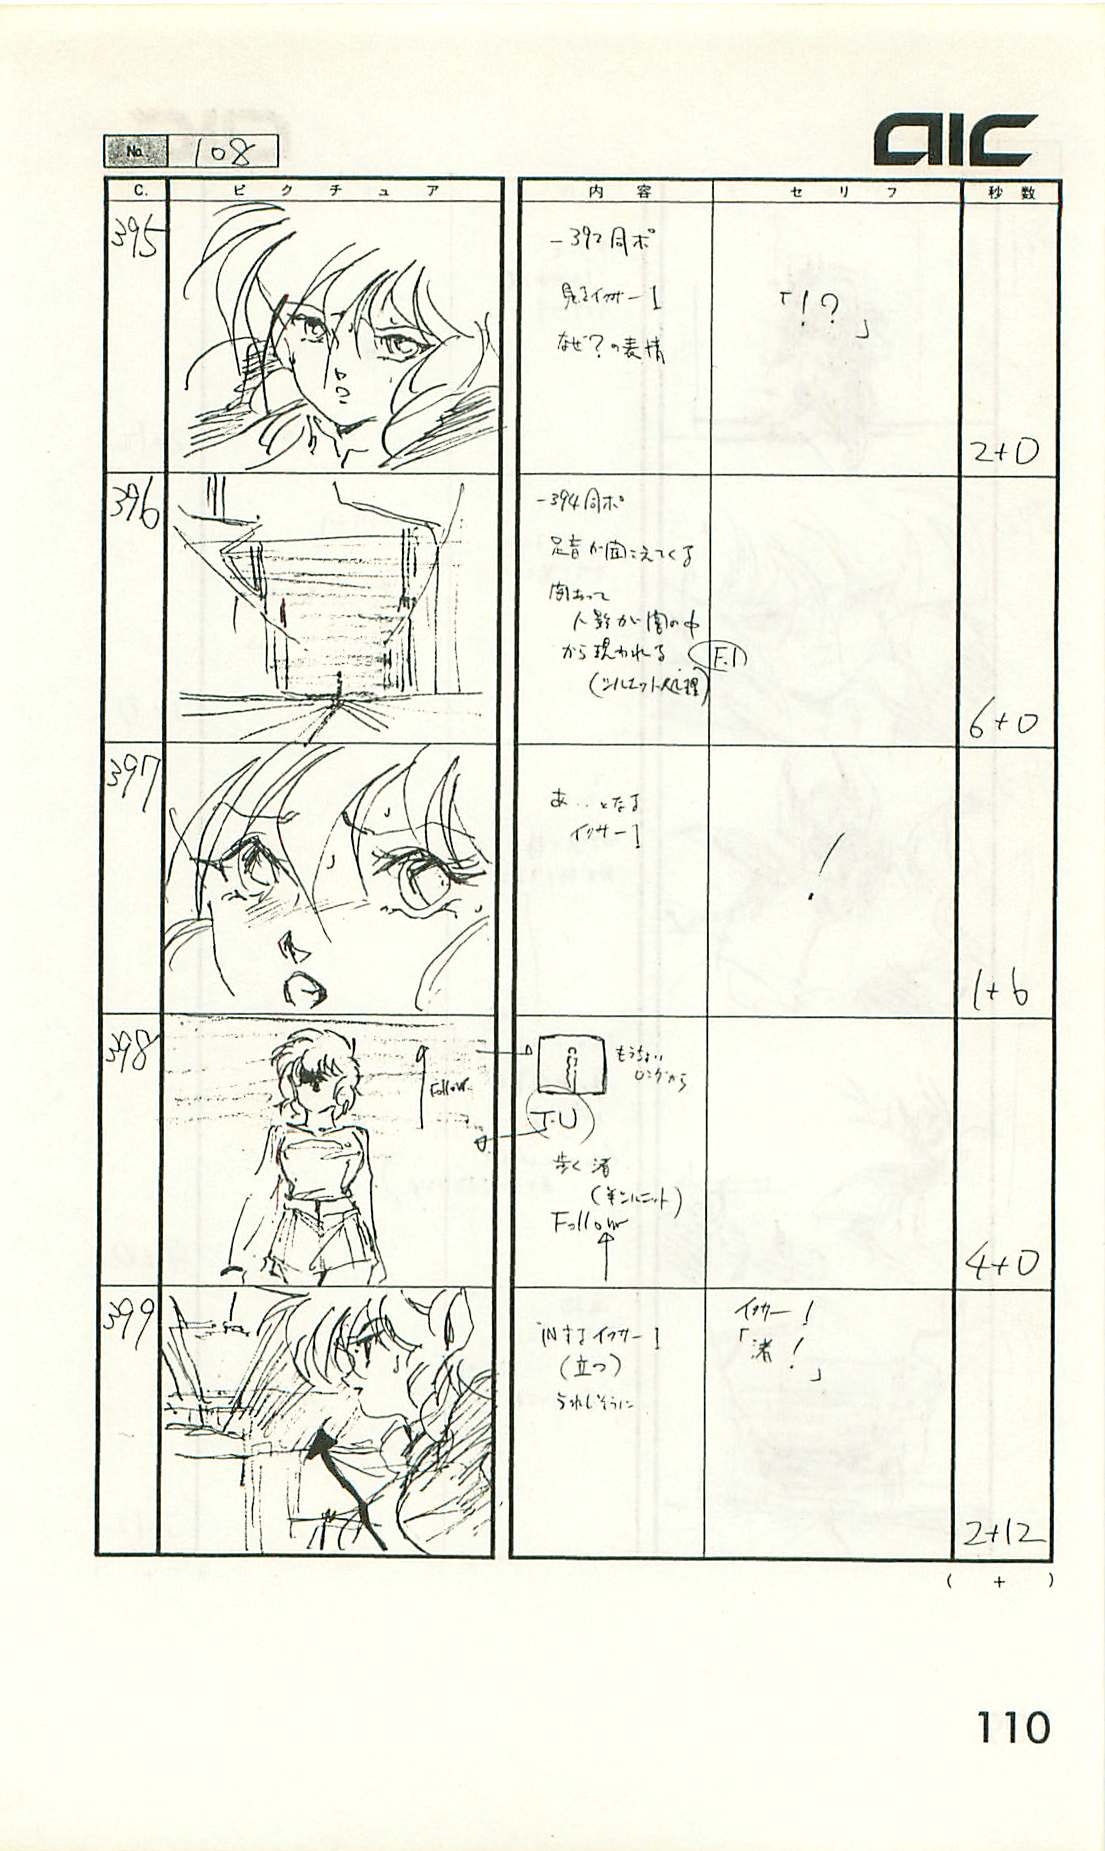 Iczer-One OVA 3 Storyboards 110